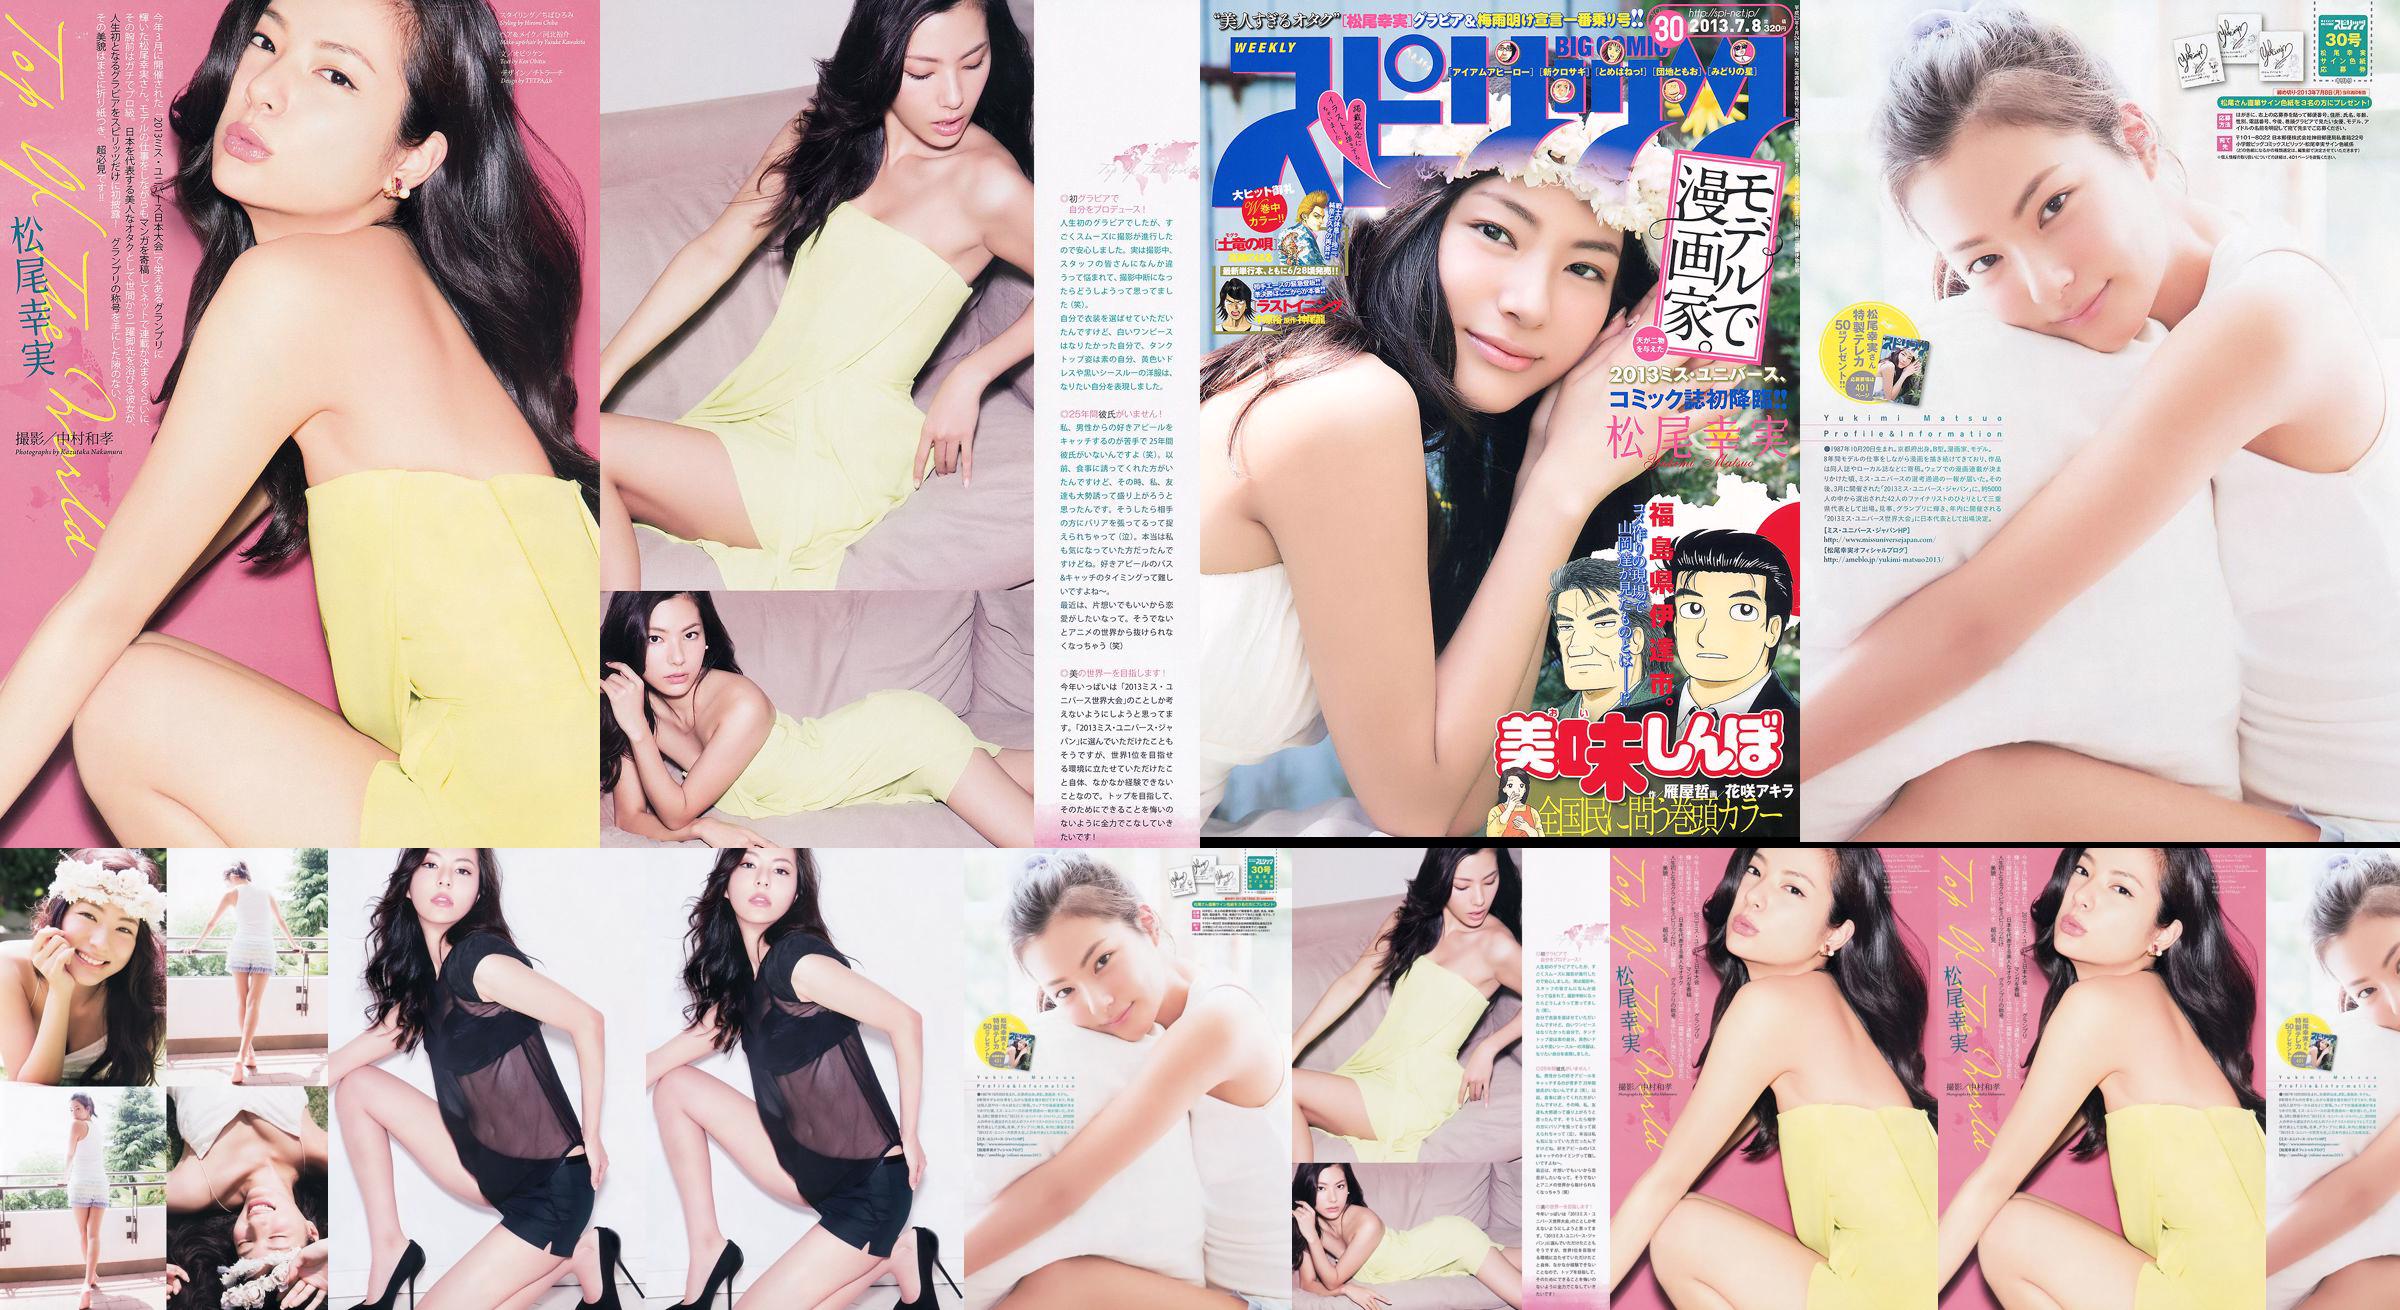 [Weekly Big Comic Spirits] Komi Matsuo 2013 No.30 Photo Magazine No.950d99 Trang 2